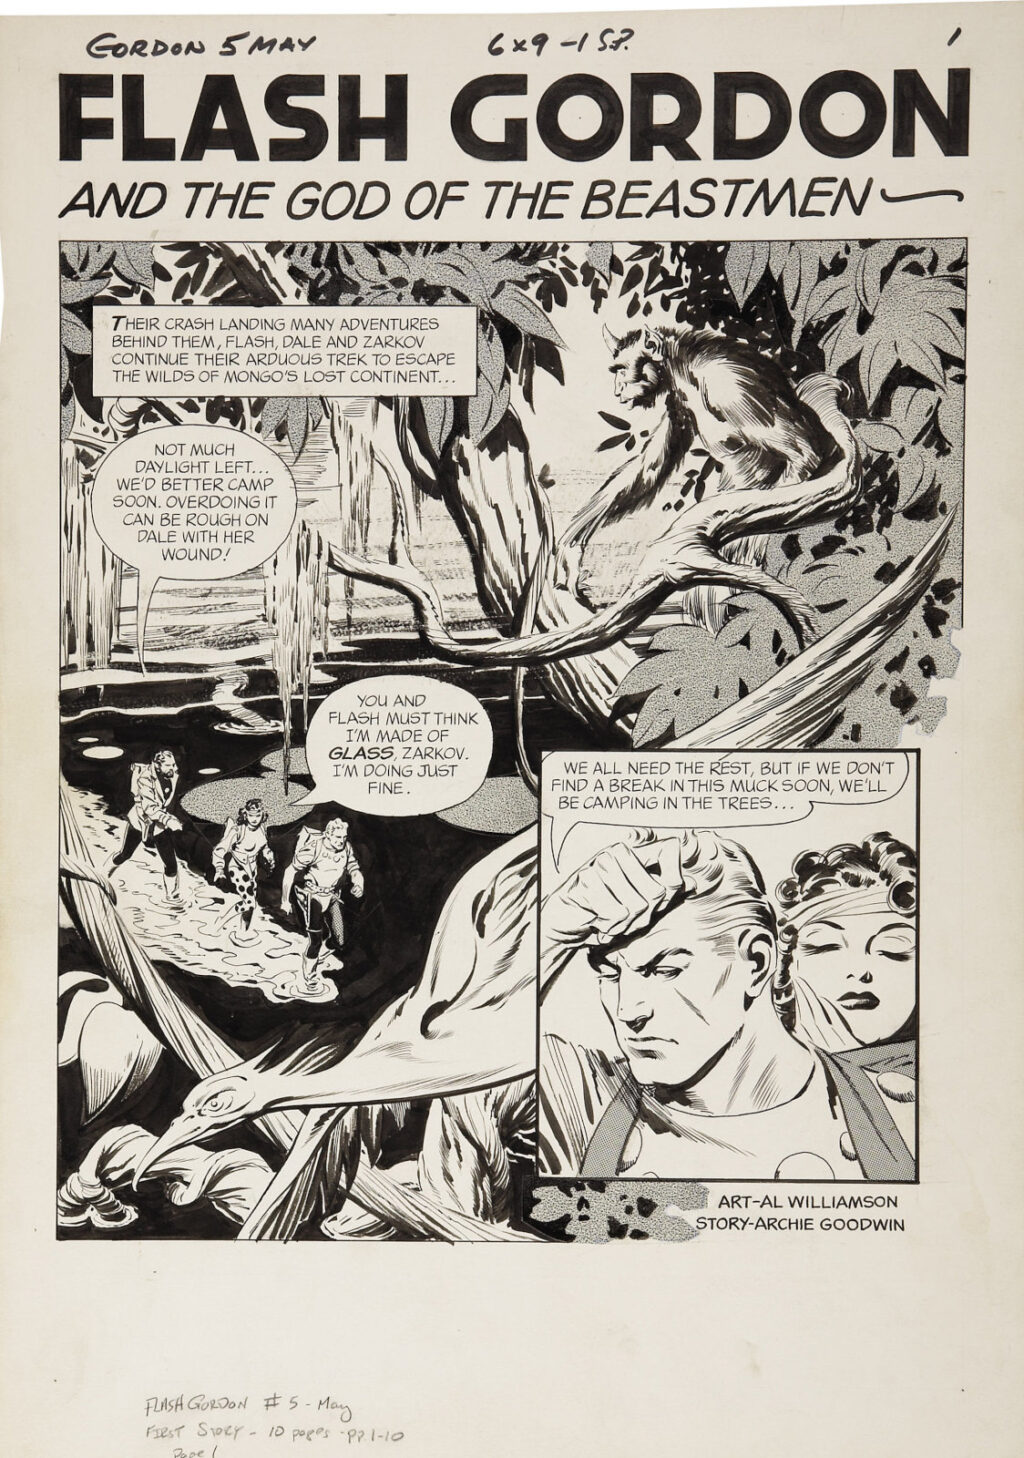 Flash Gordon issue 5 page 1 by Al Williamson